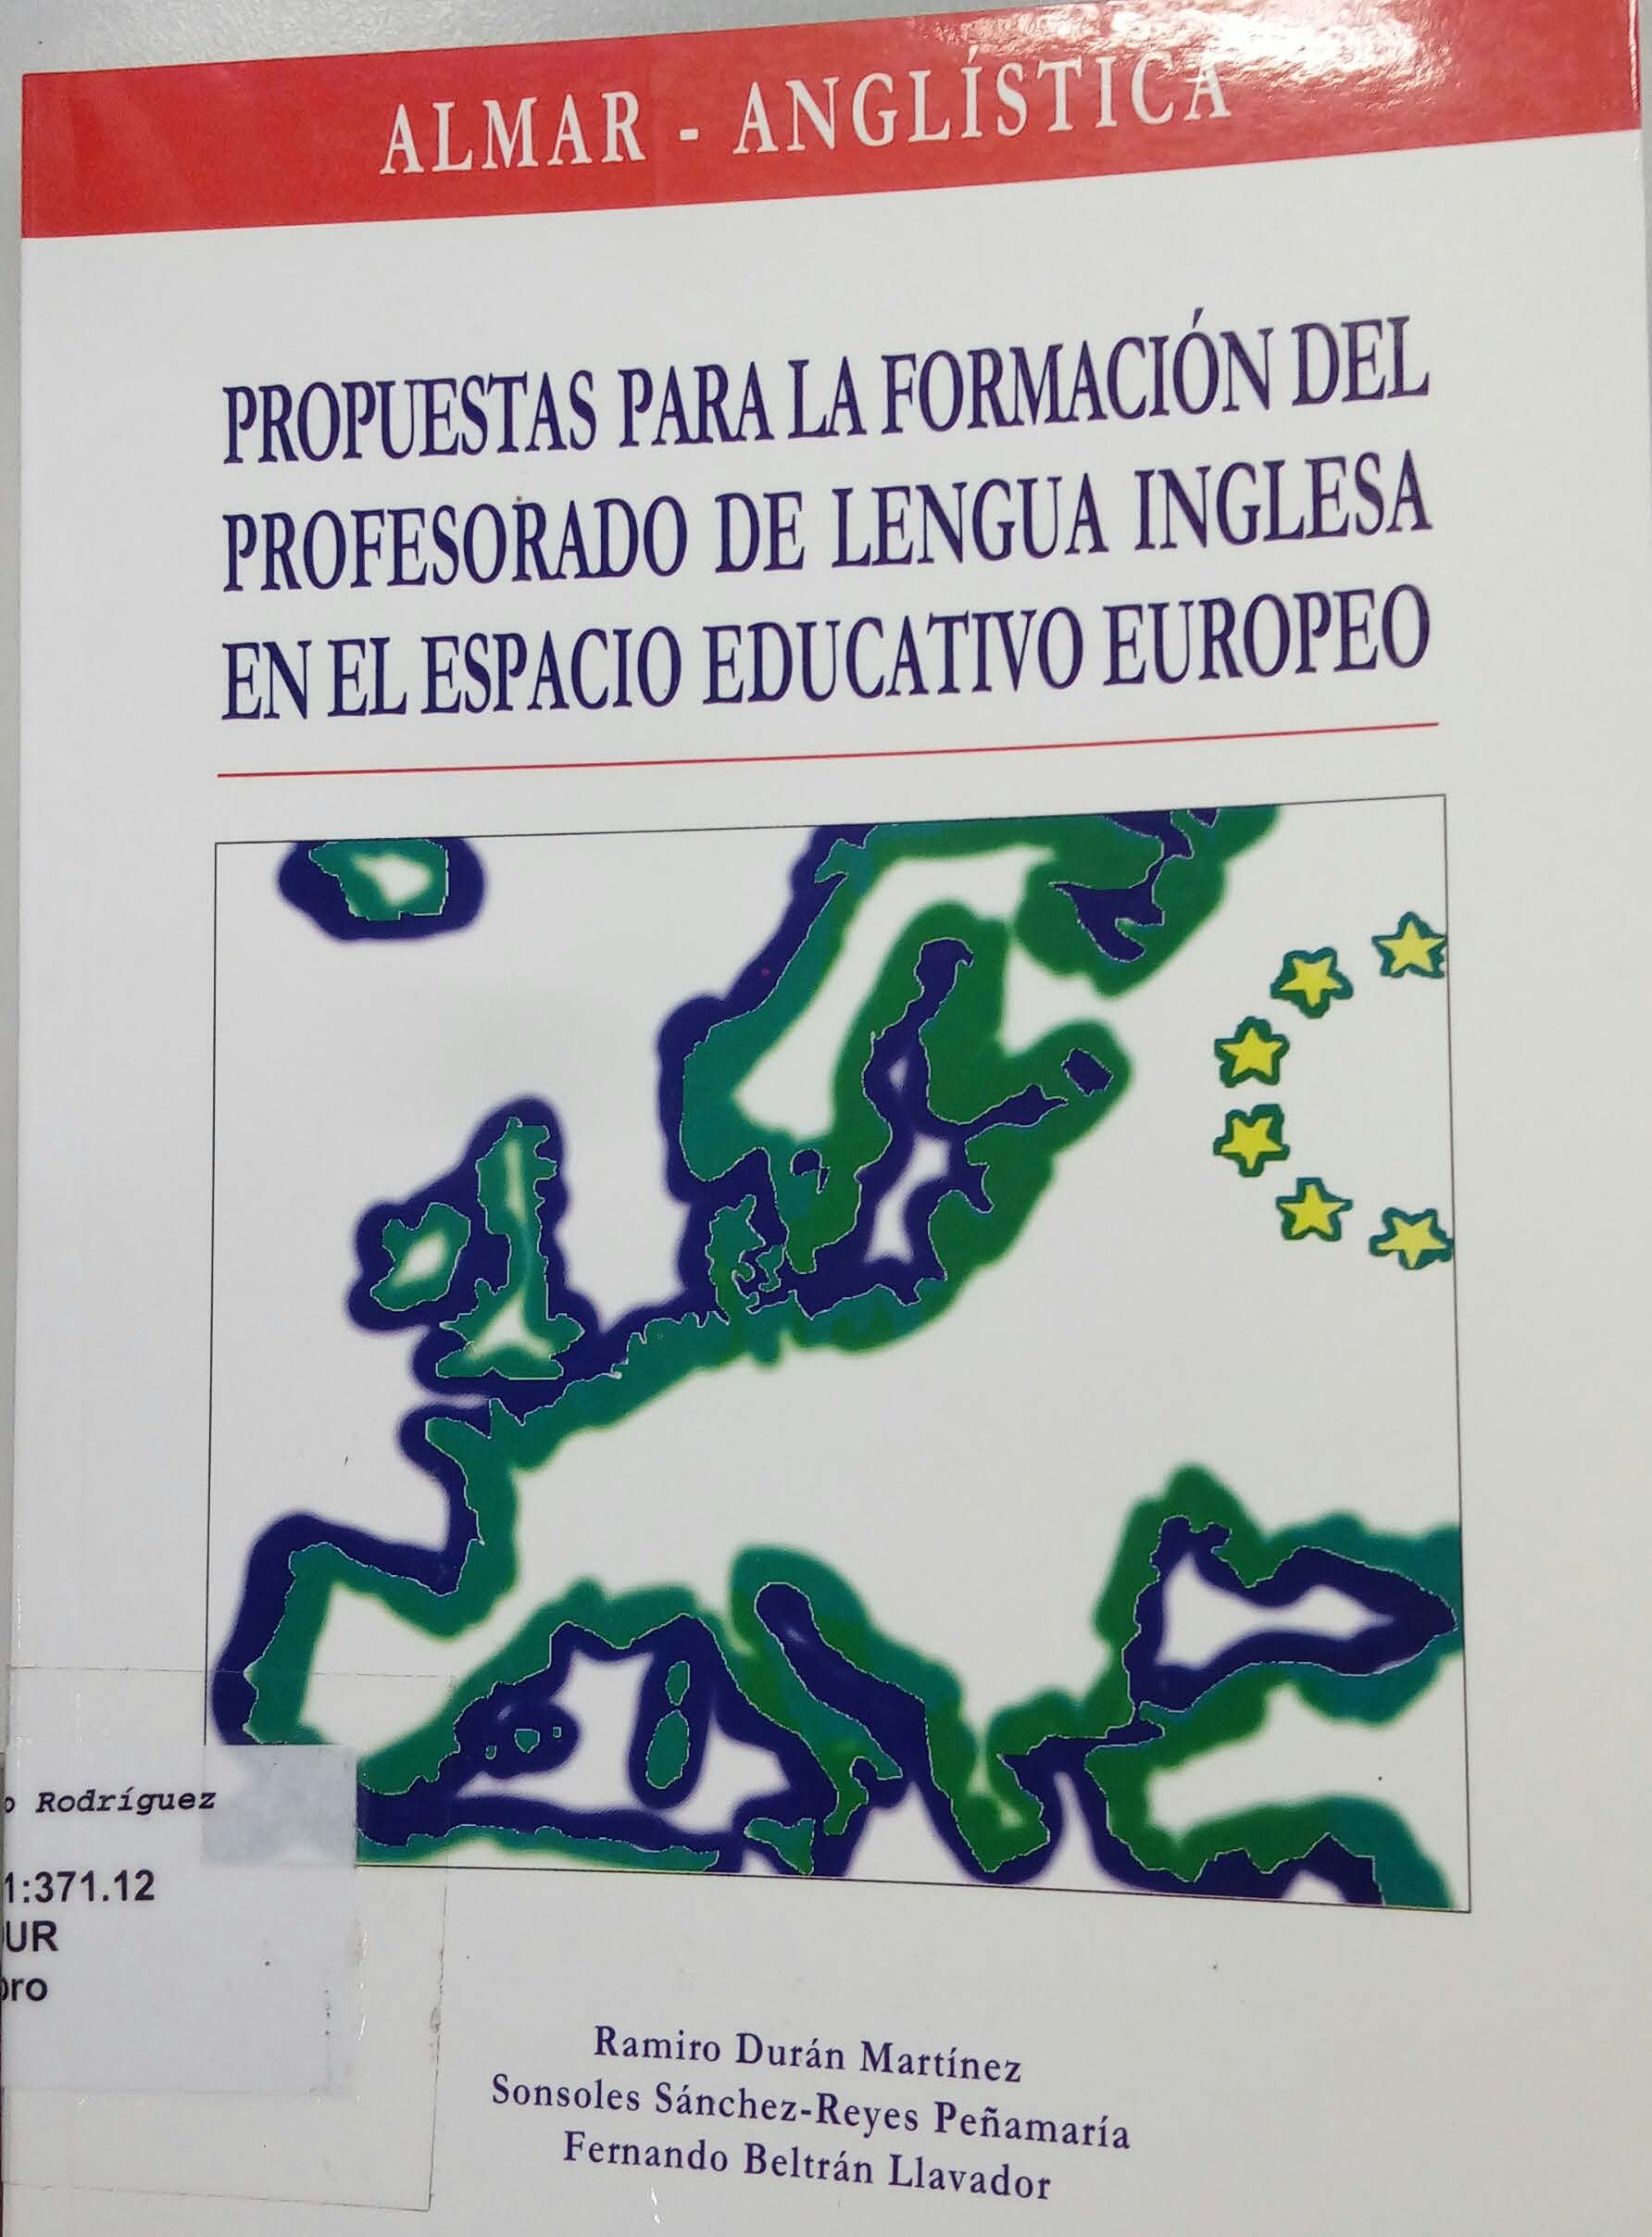 Imagen de portada del libro Propuestas para la formación del profesorado de lengua inglesa en el espacio educativo europeo